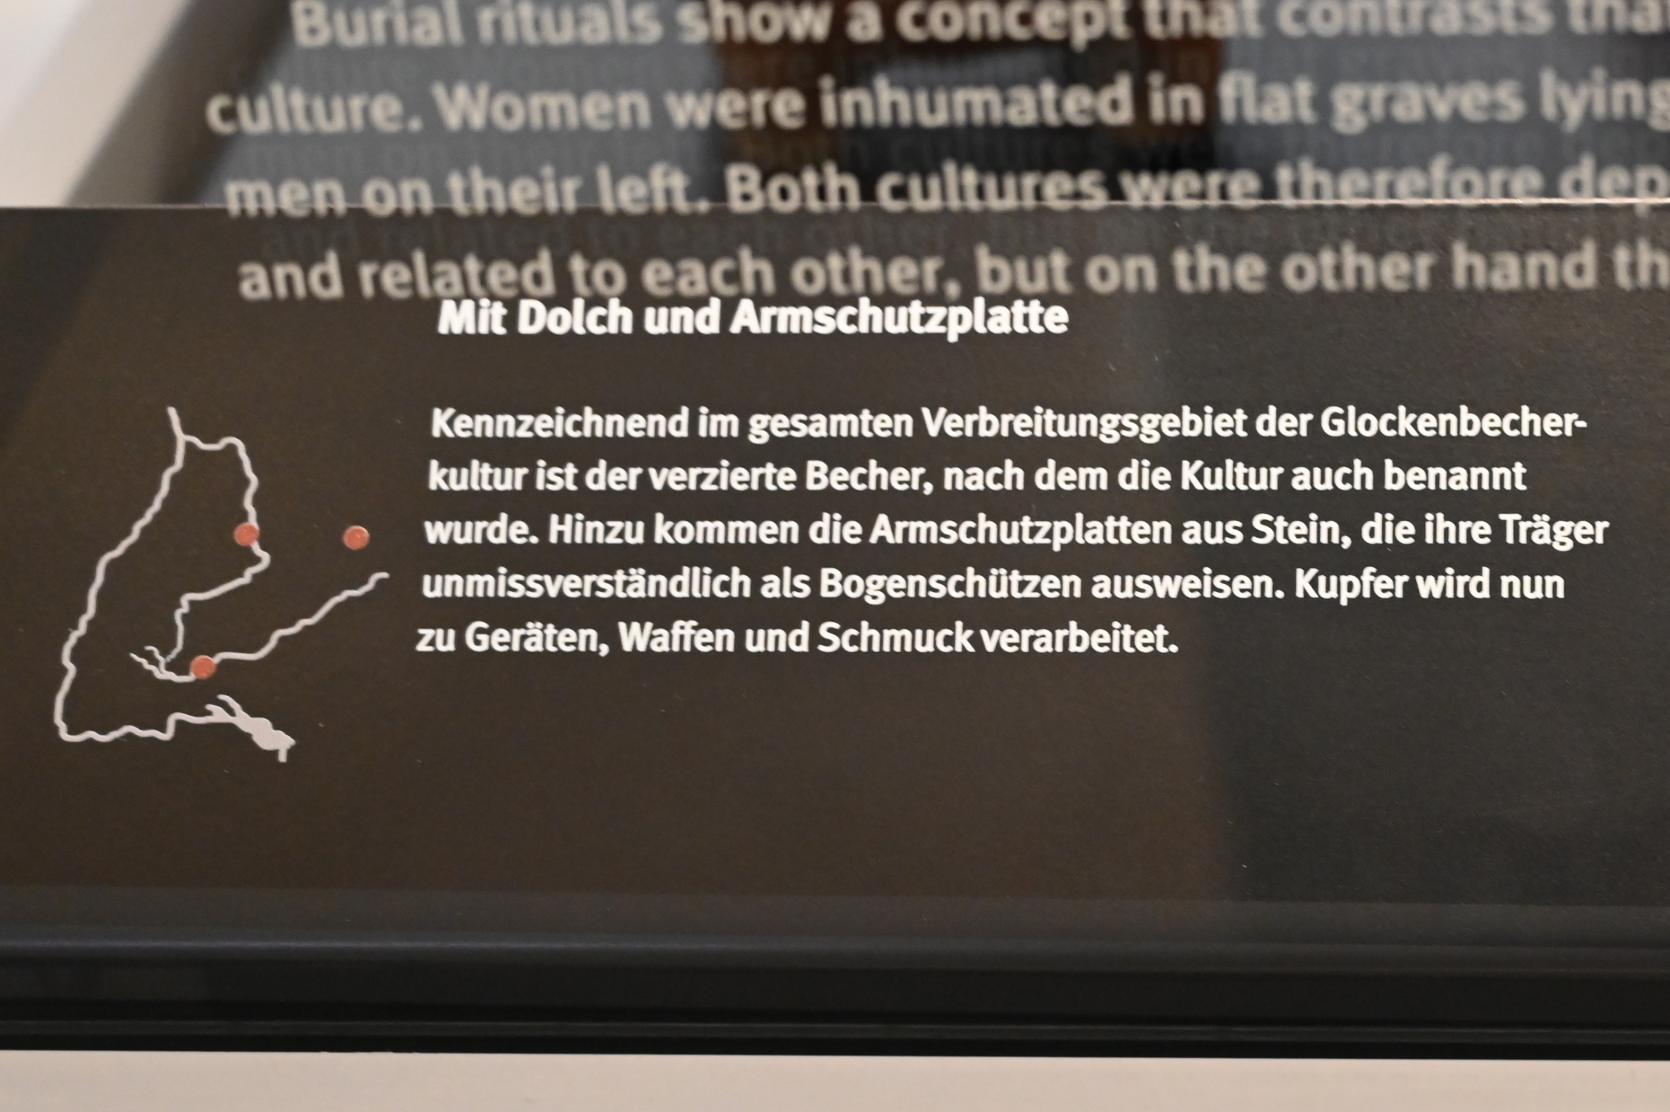 Vierfüßchenschale, Neolithikum (Jungsteinzeit), 5500 - 1700 v. Chr., 2400 v. Chr., Bild 3/3